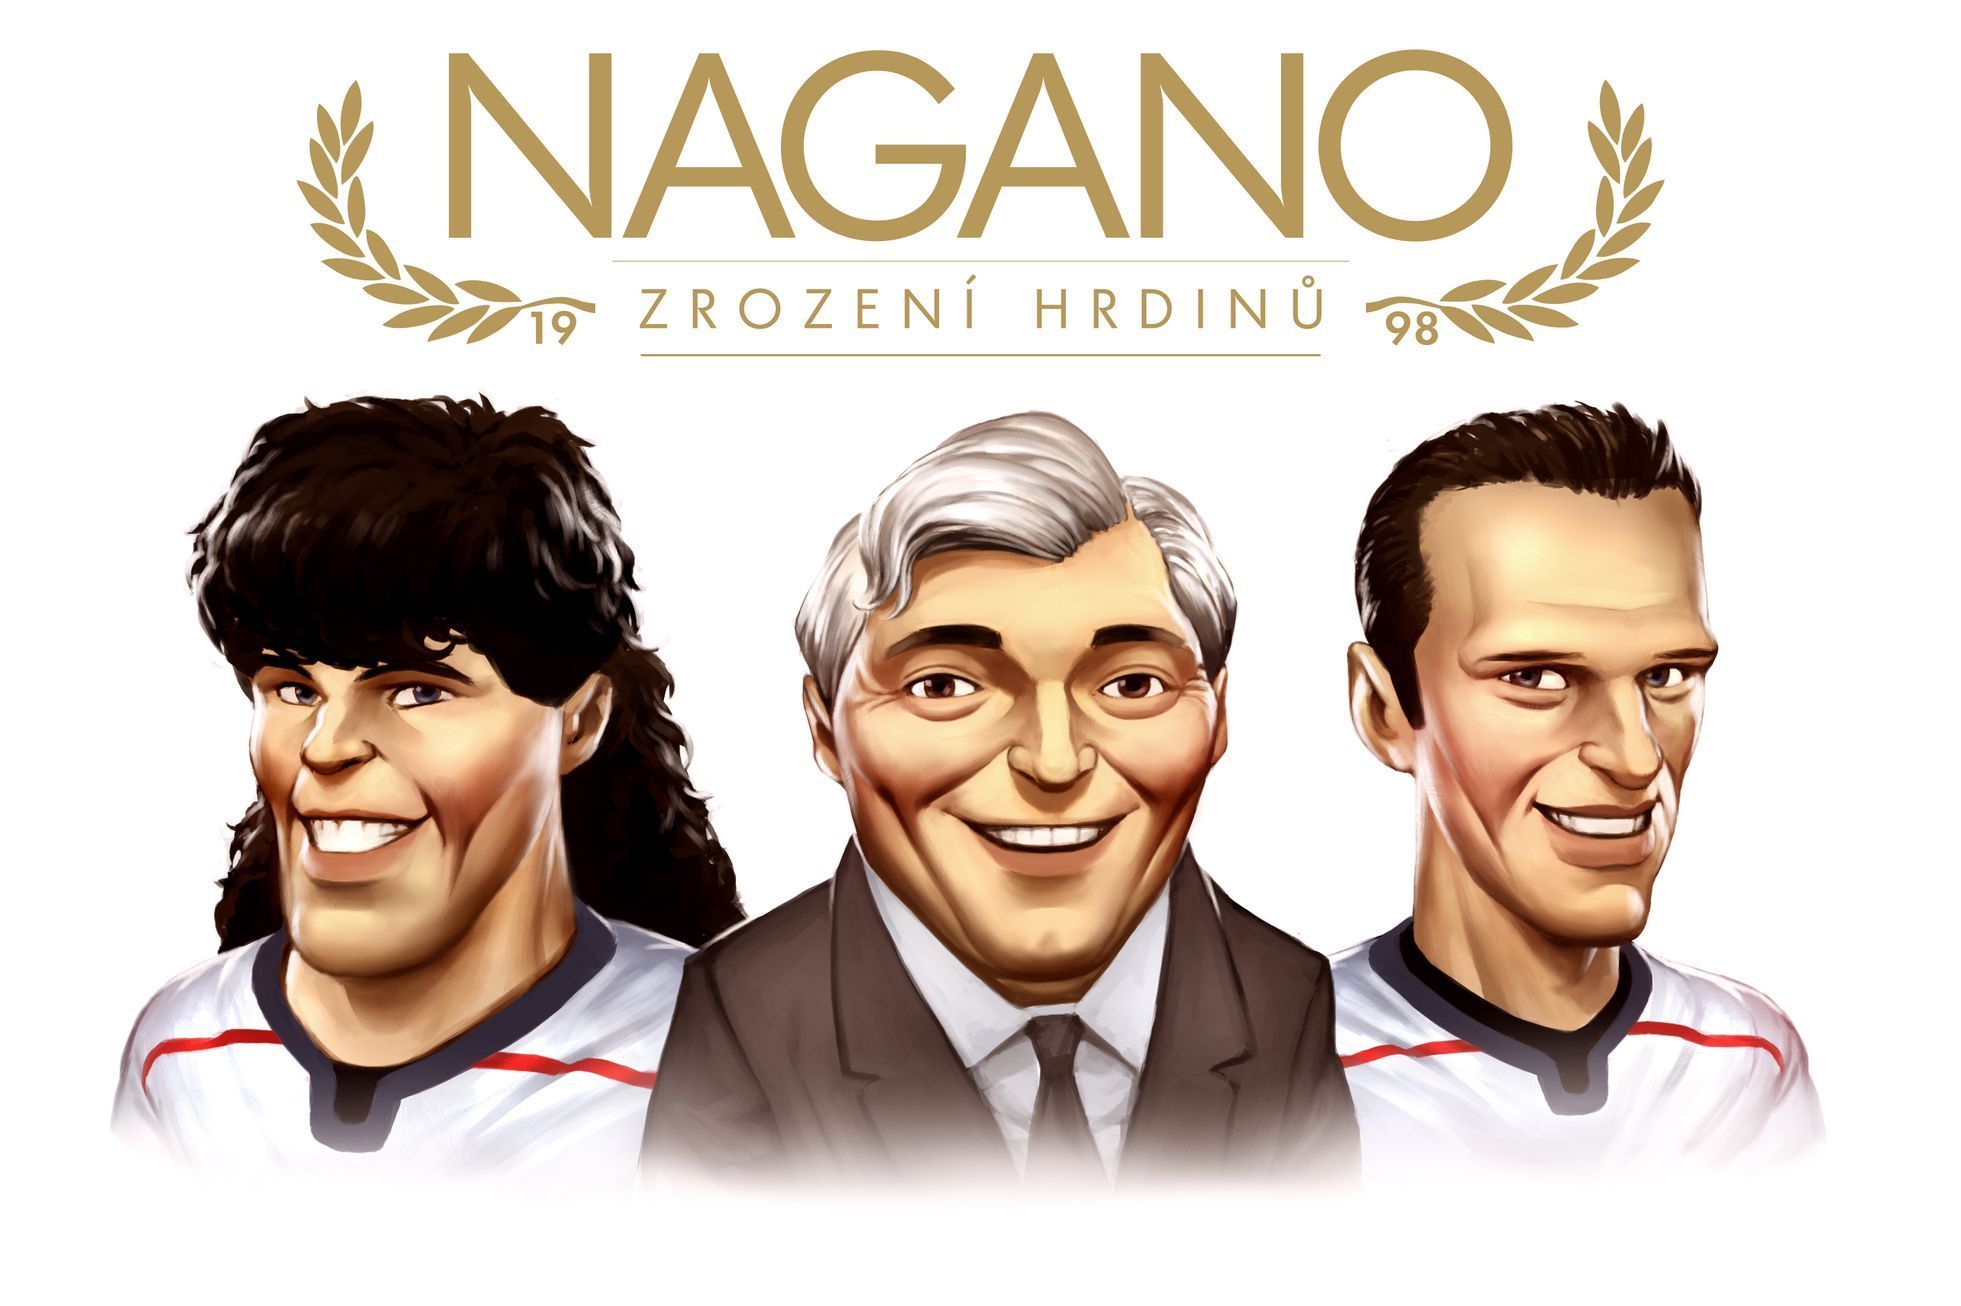 Nagano - zrození hrdinů